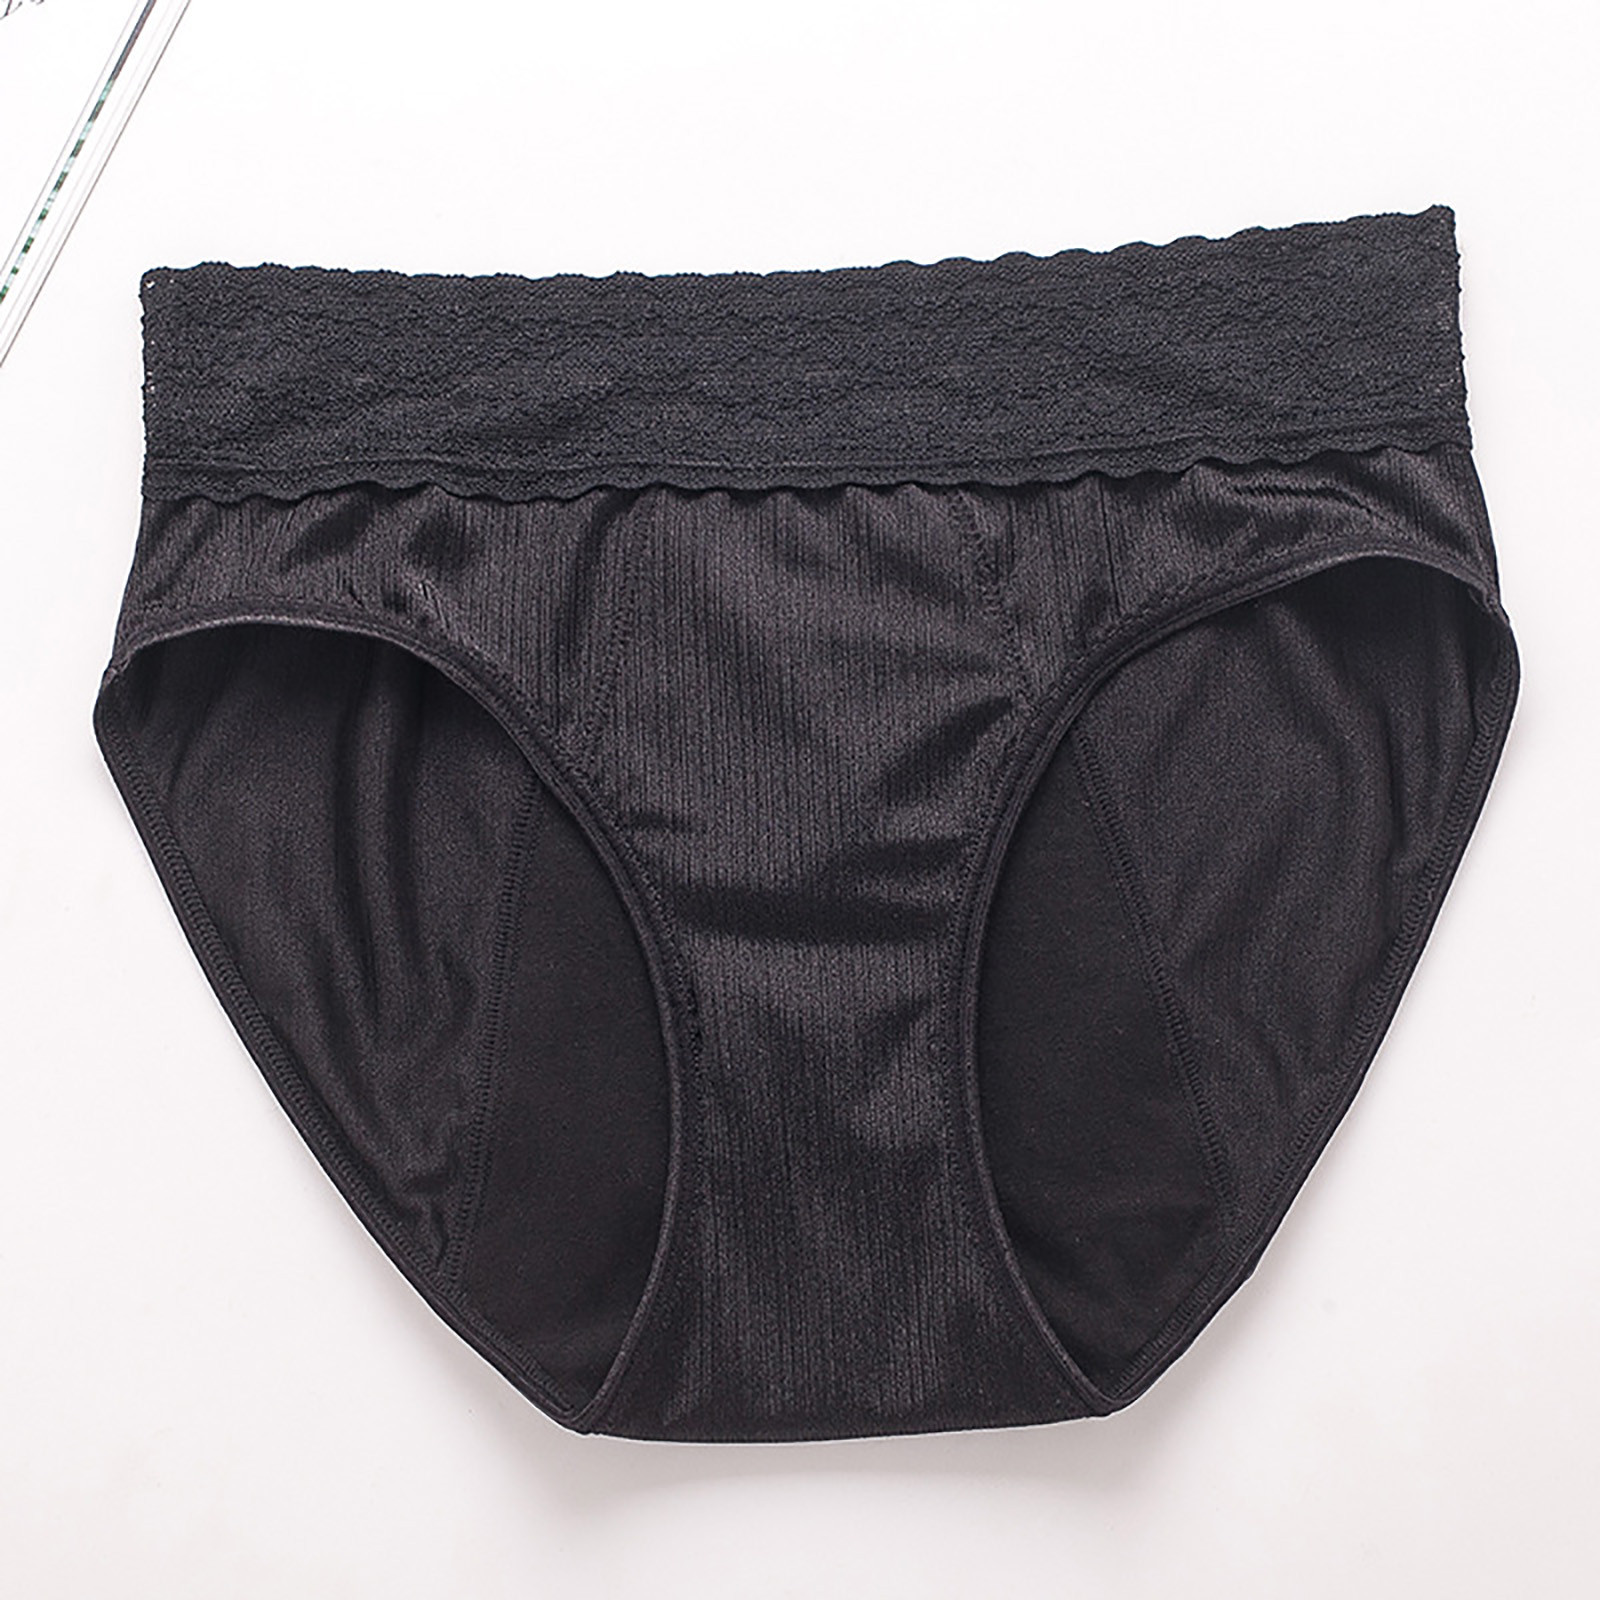 Lilgiuy Women's Large Underwear Medium High Waist Middle-Aged Underwear ...